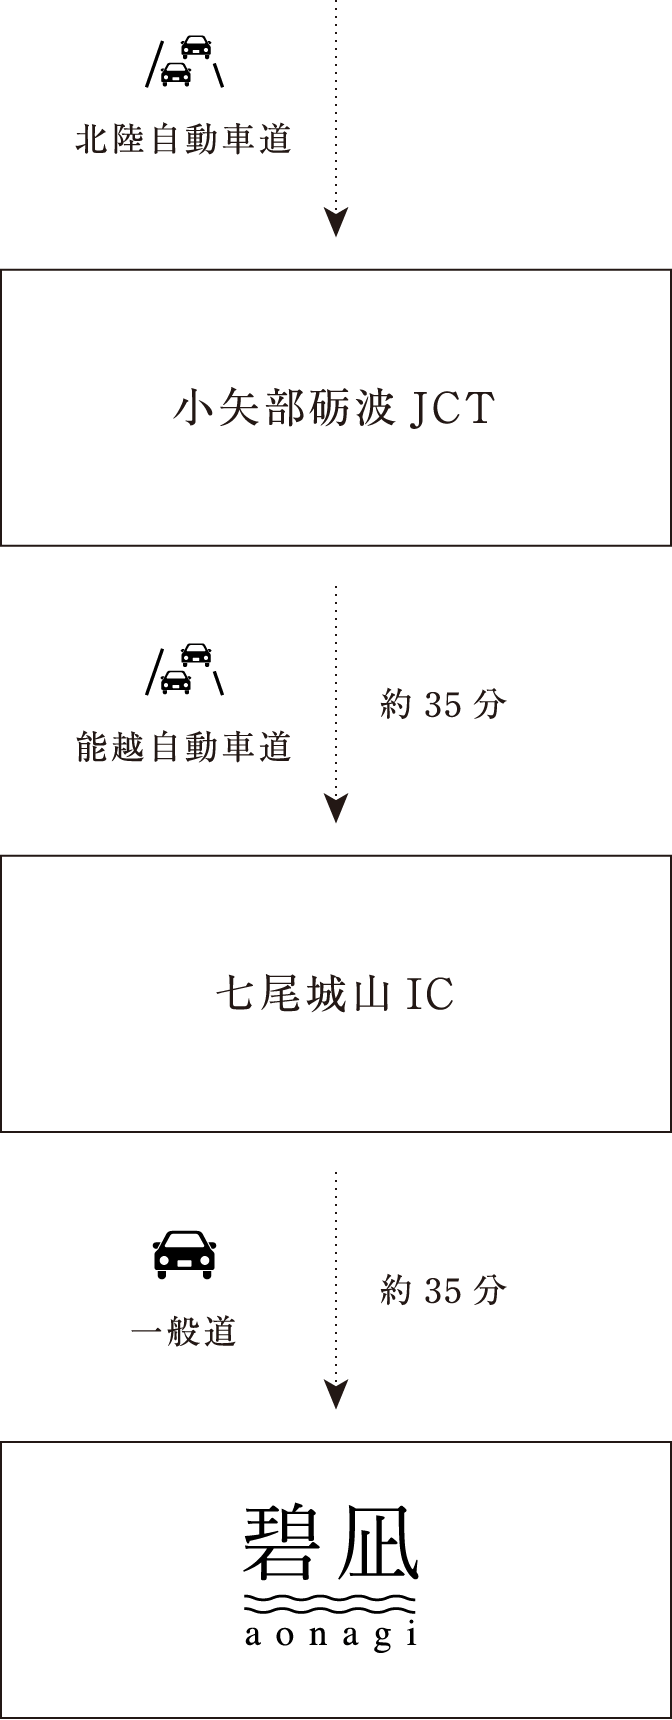 北陸自動車道→小矢部砺波JCT→能越自動車道 約35分→七尾城山IC→一般道 約35分→碧凪